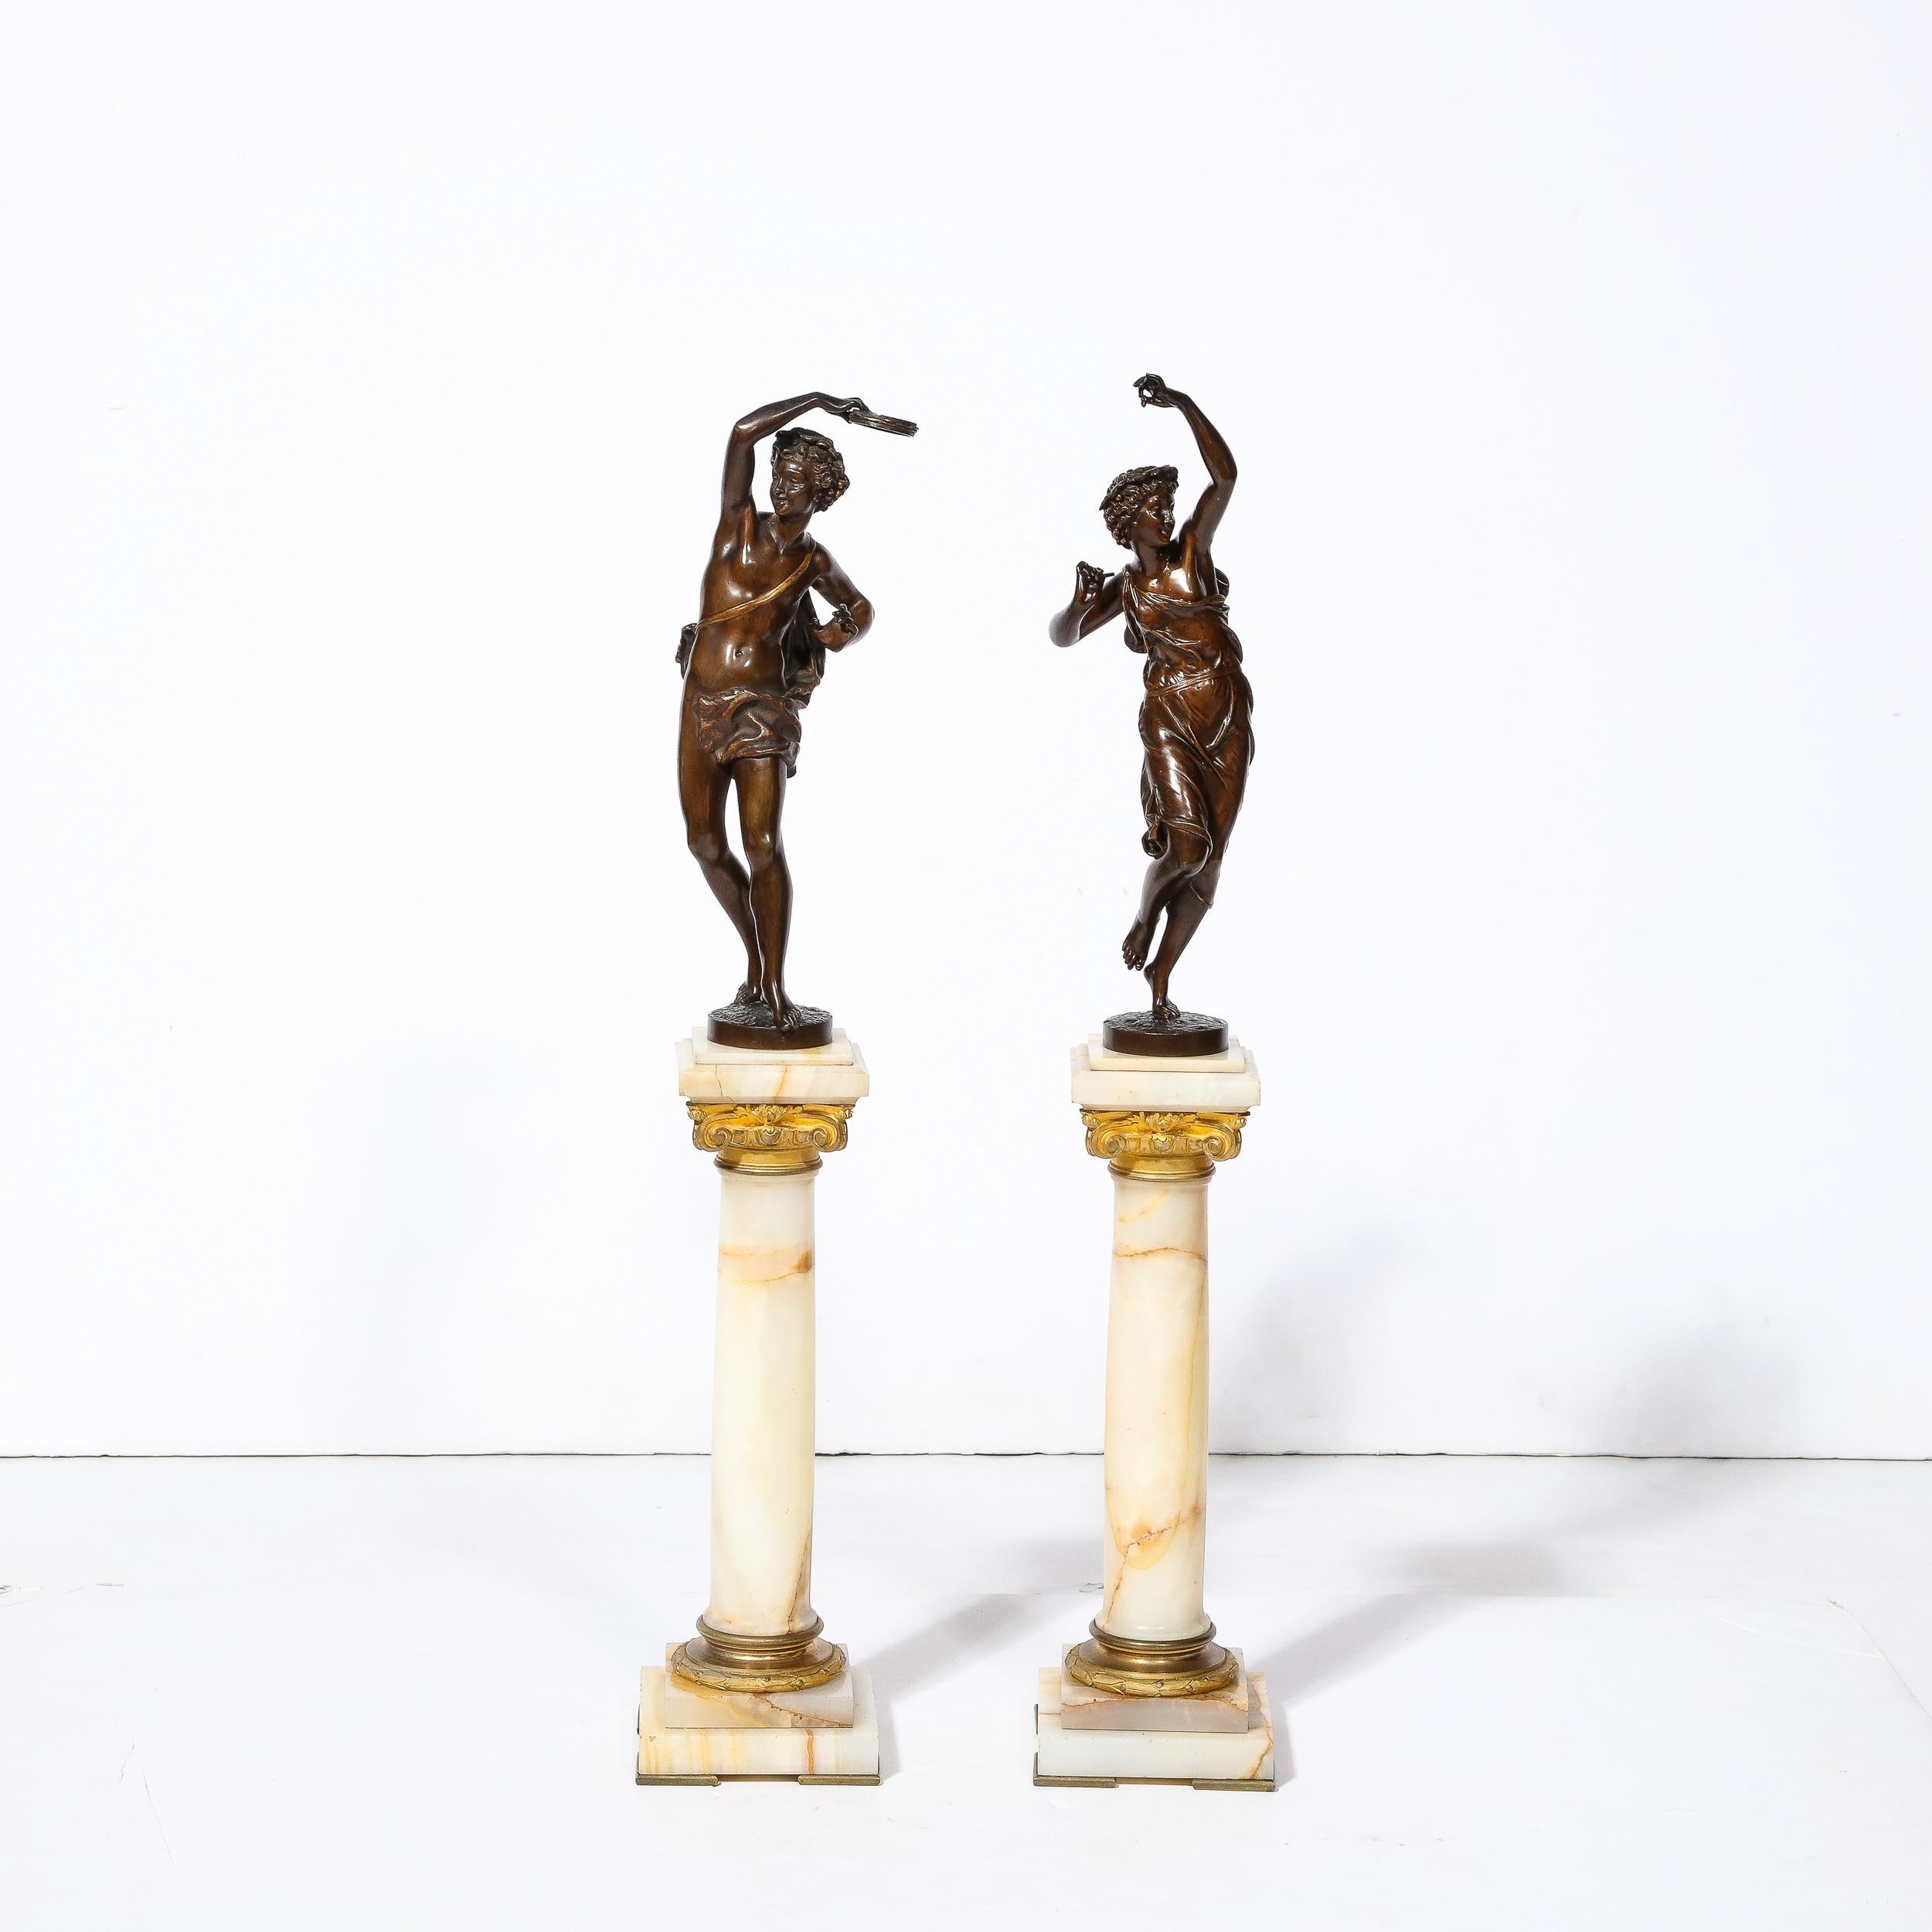 Cette charmante paire de sculptures de Bacchantes néoclassiques en bronze d'Earnest Rancoulet provient de France, vers 1900. Ces figures mythologiques jeunes et enjouées sont des adeptes de Dionysos, qui se livrent à des rituels de danse et